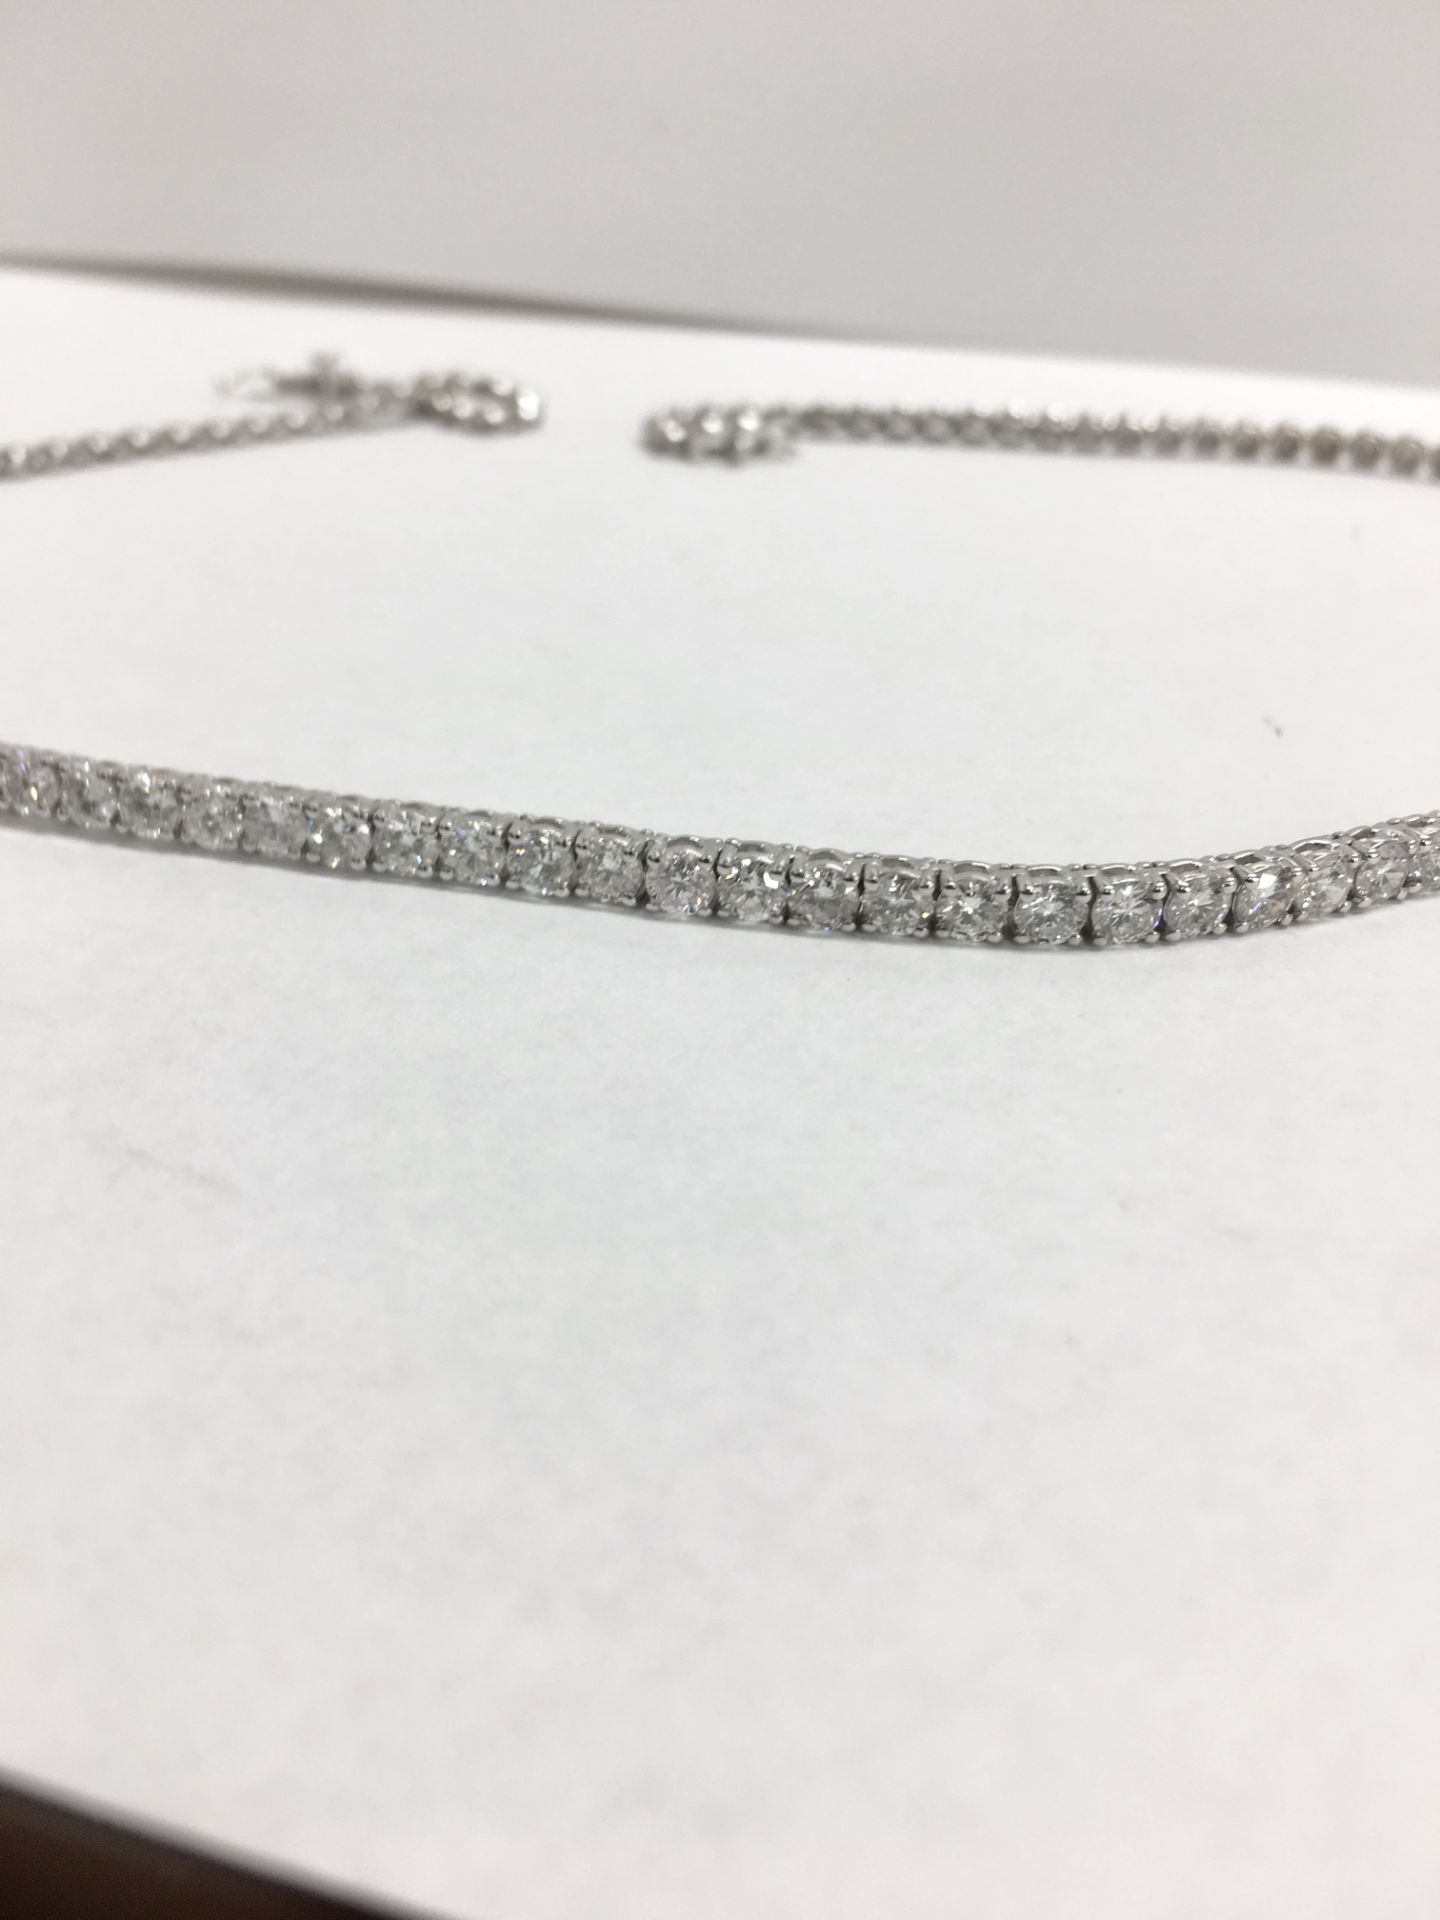 9.80ct 18ct white gold diamond necklace ,9.80ct h colour si grade diamonds,21.3gms 18ct white - Image 3 of 10